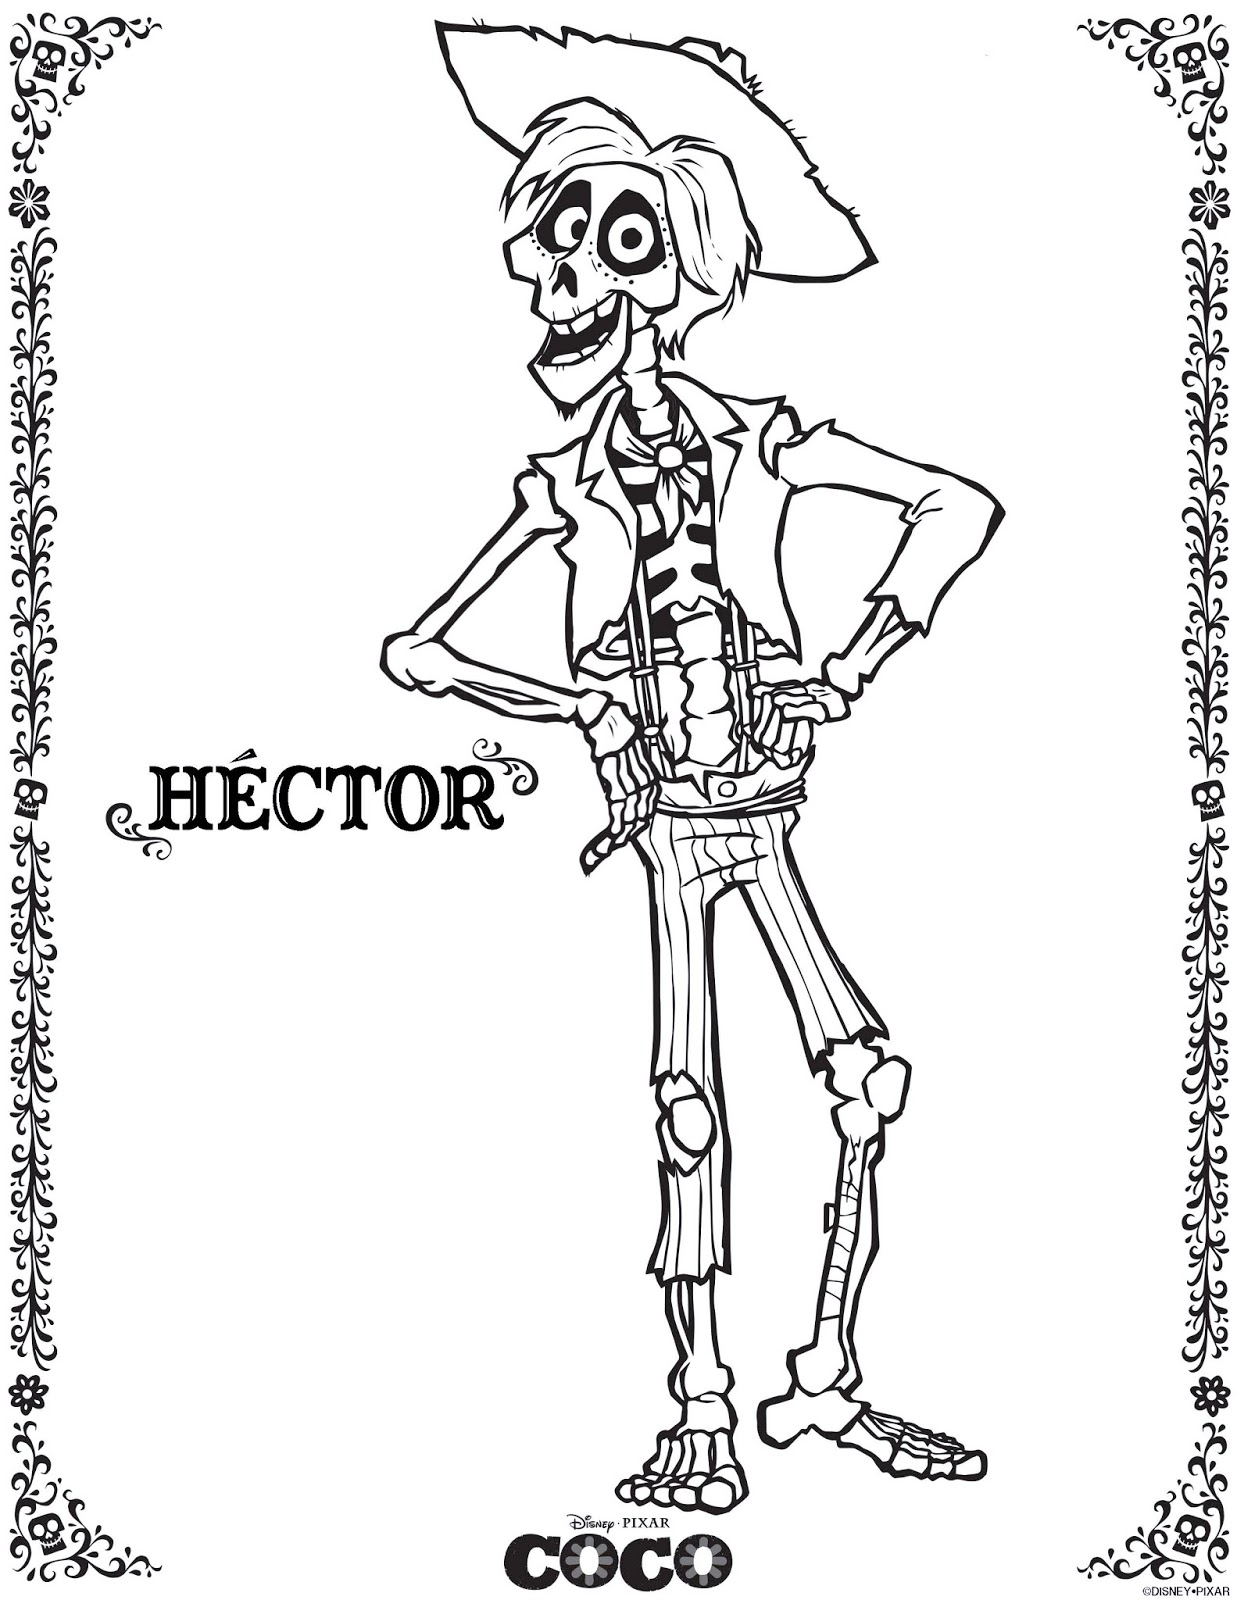 Dibujo de Coco para imprimir y colorear: Hector